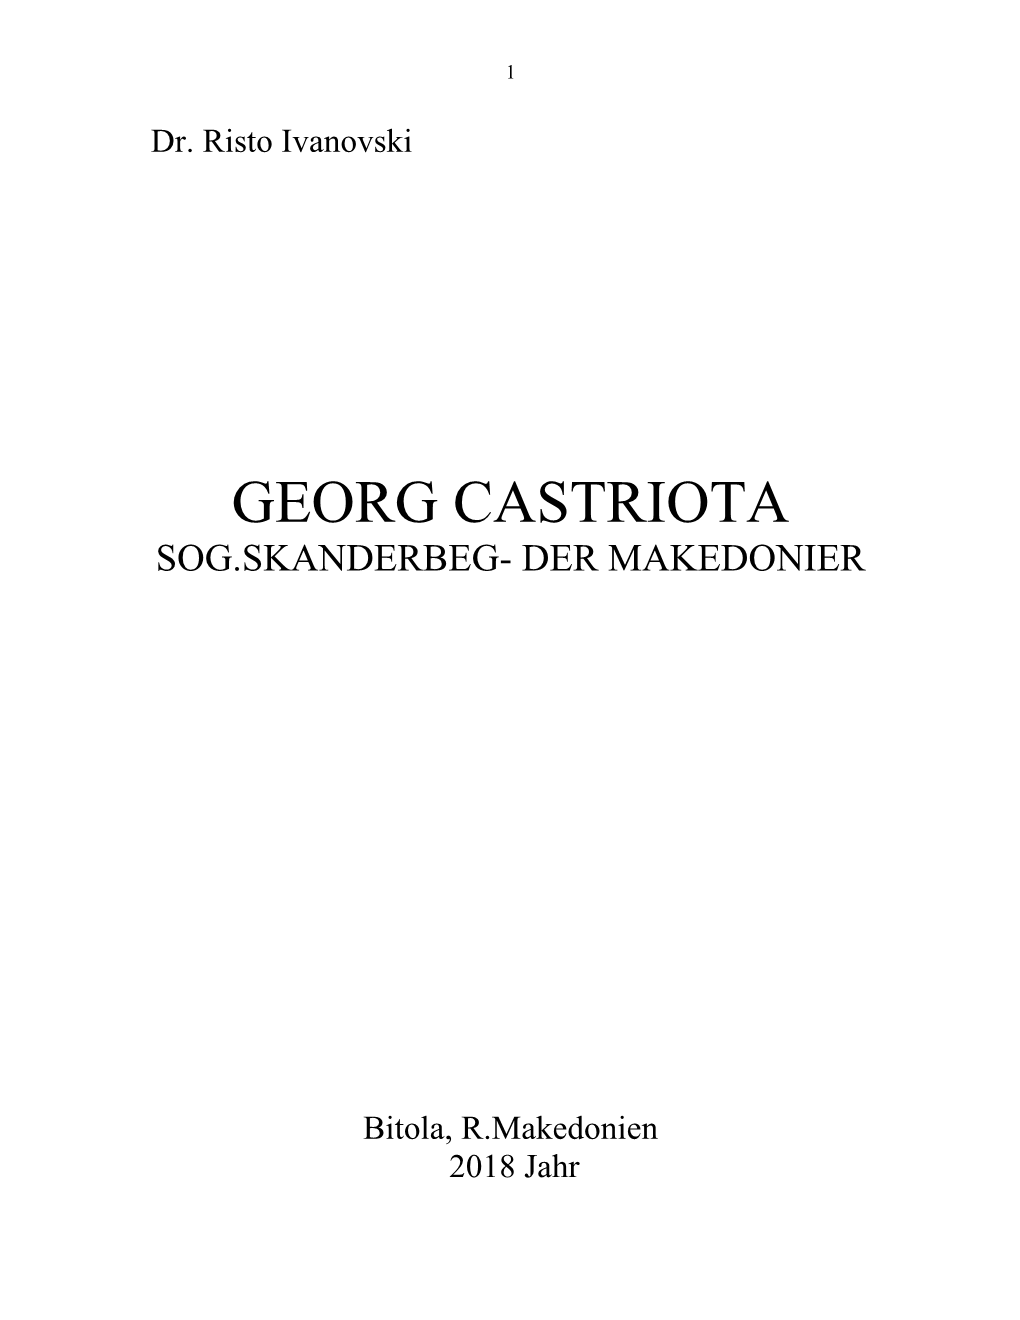 Georg Castriota Sog.Skanderbeg- Der Makedonier